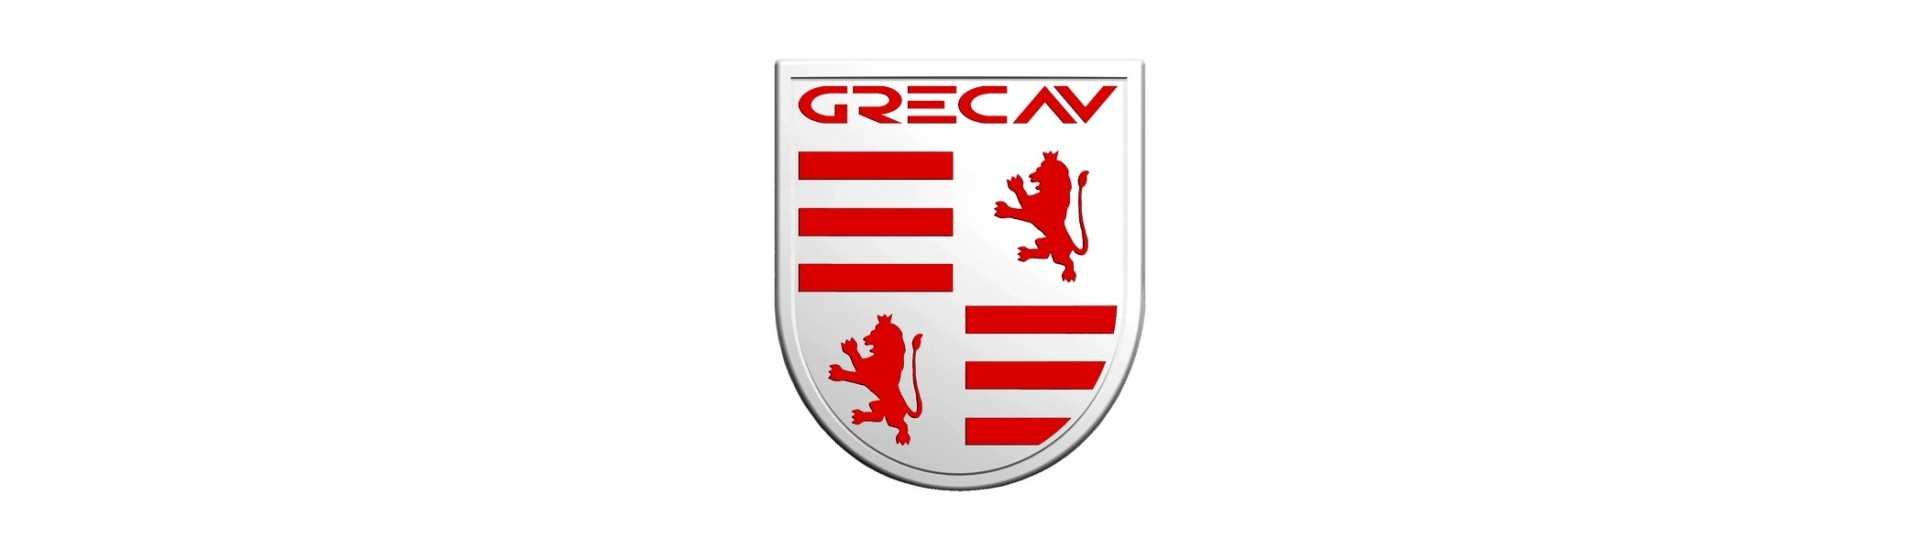 Logo e adesivo al miglior prezzo per auto senza permesso Grecav